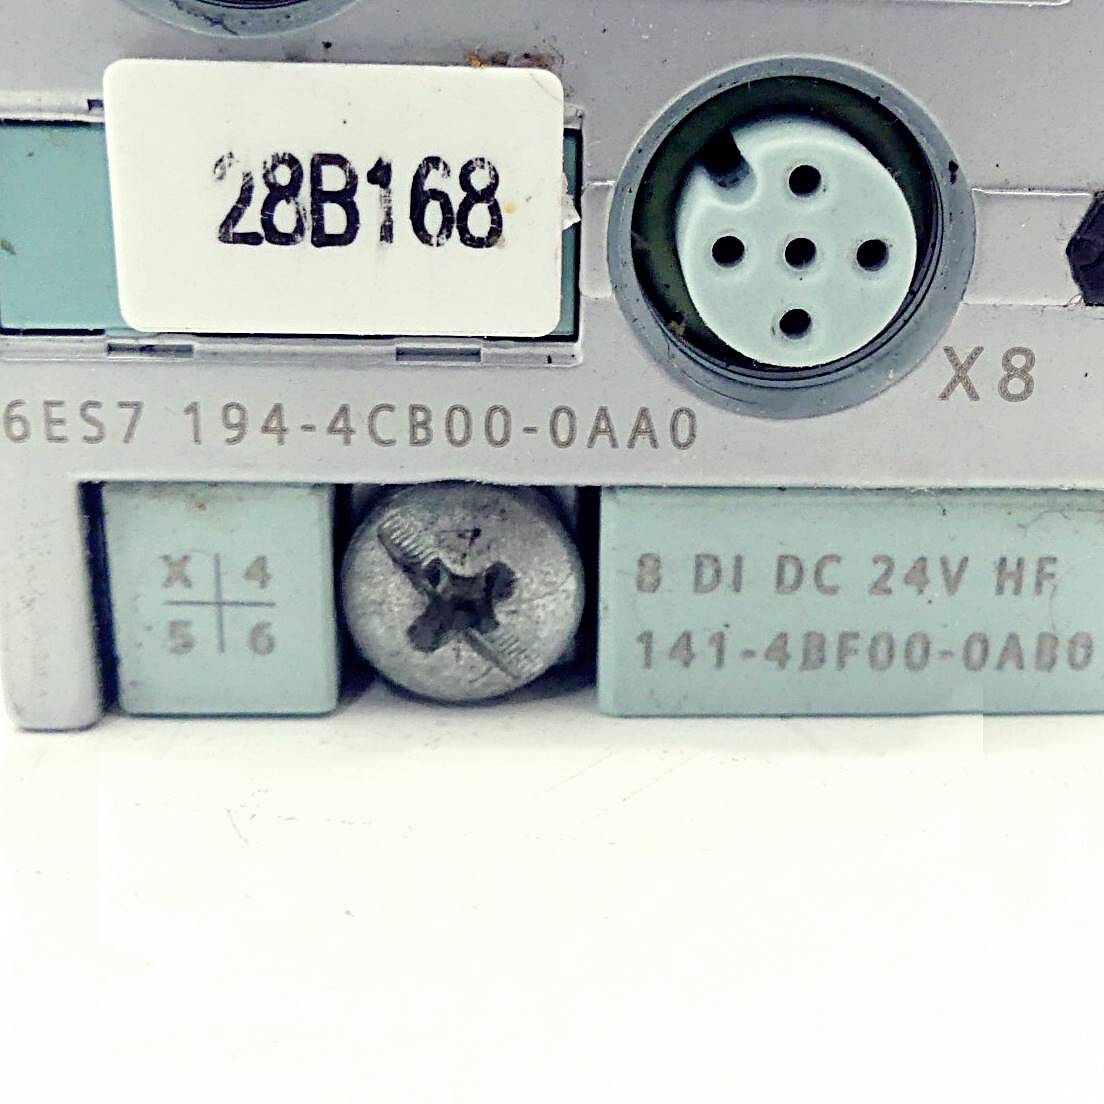 Connection module 6ES7 194-4CB00-0AA0 